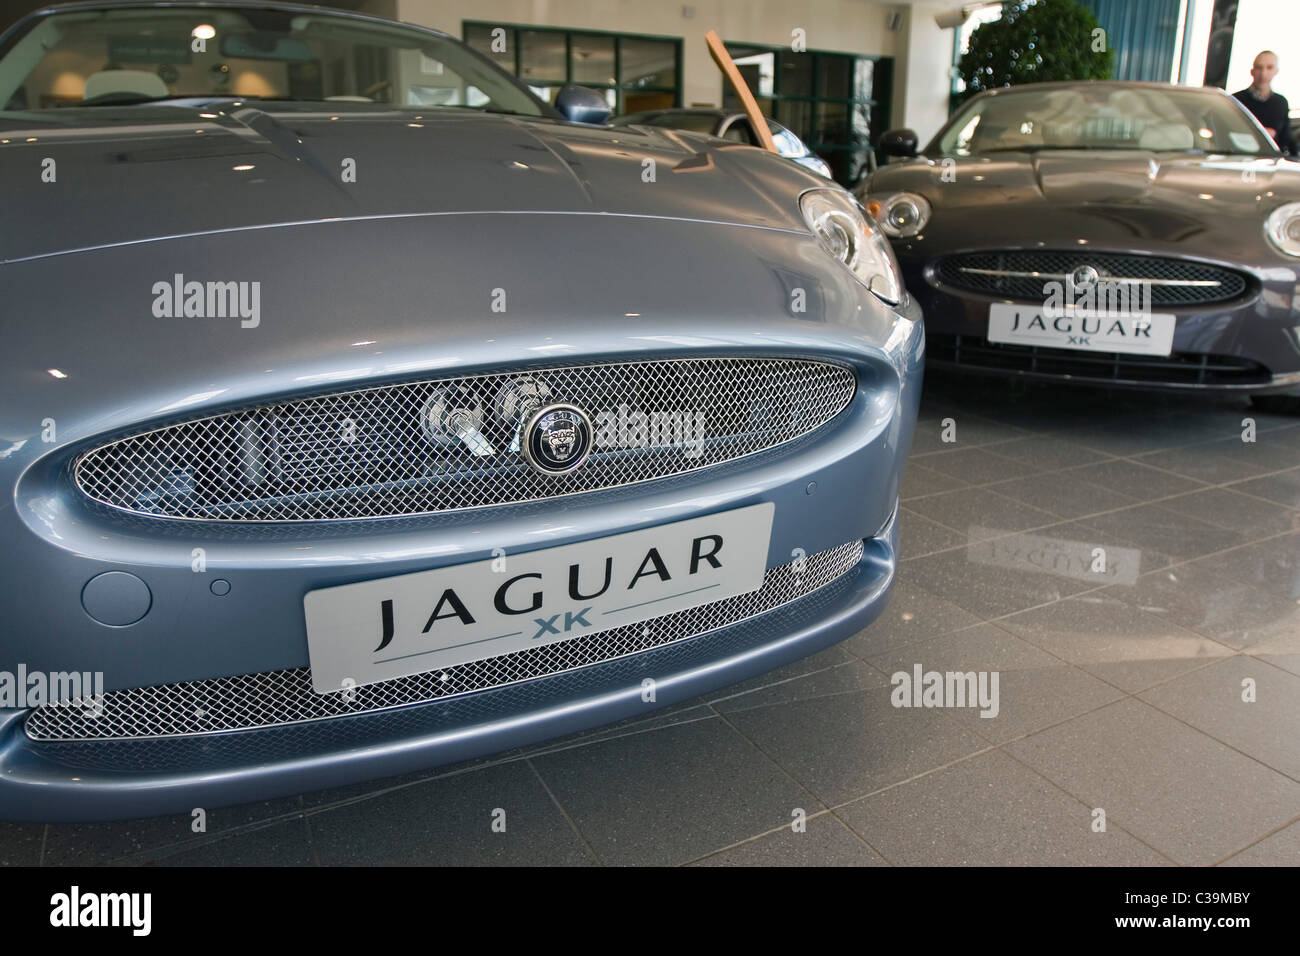 Jaguar Car Dealership Stock Photos & Jaguar Car Dealership Stock Images ...